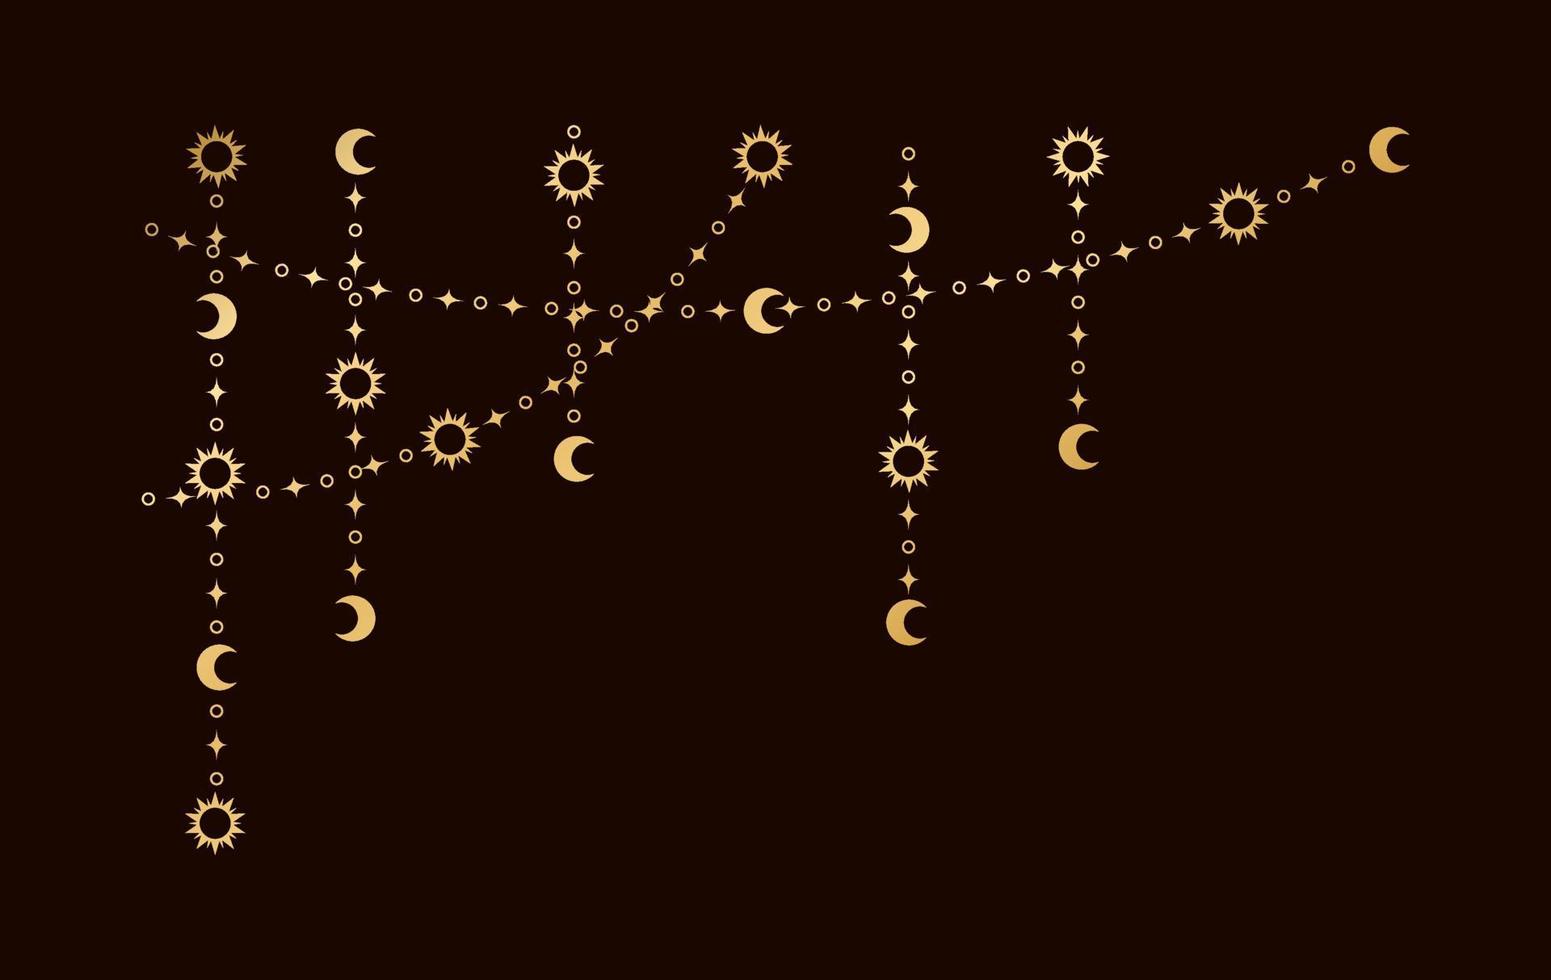 oro místico celestial colgando guirnalda marco esquina con sol, estrellas, Luna etapas, medias lunas florido bohemio mágico cortina decorativo elemento vector